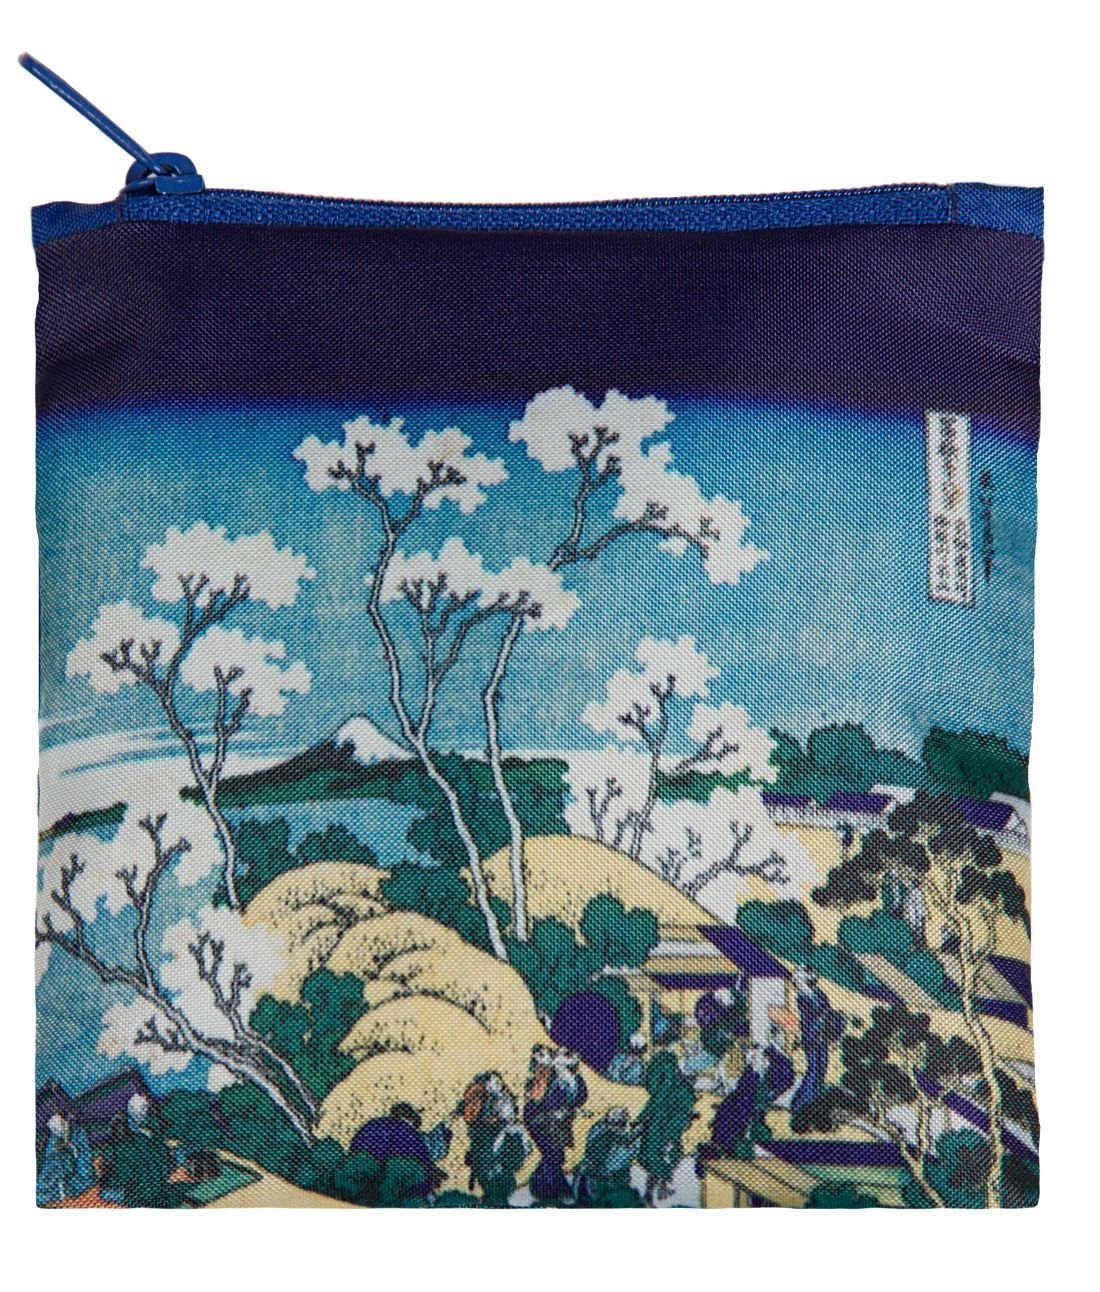 LOQI Museum Hokusai's Fuji from Gotenyama Reusable Shopping Bag